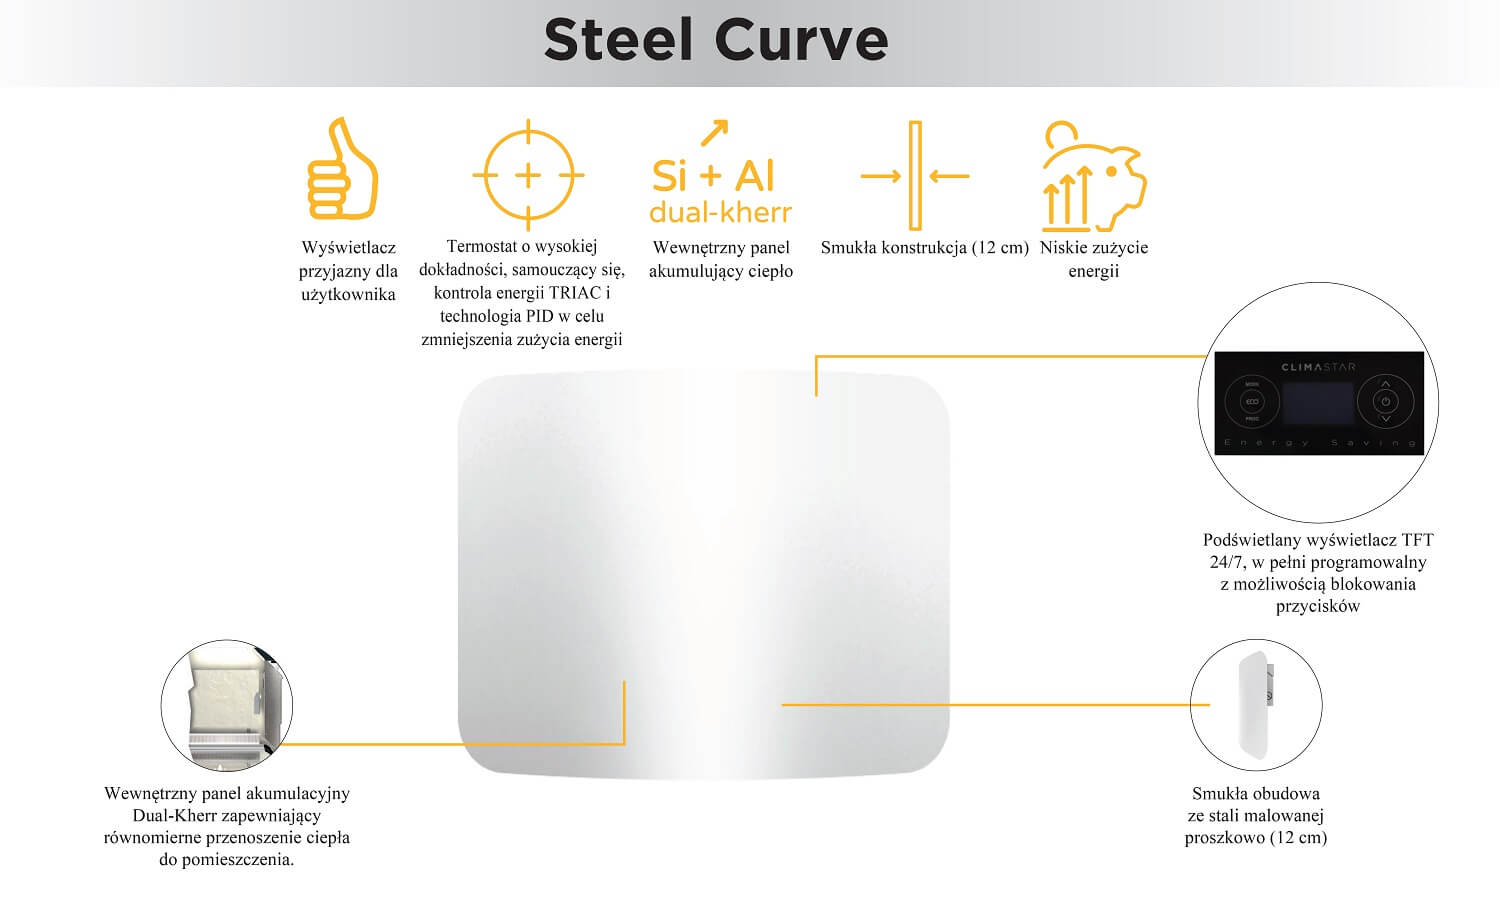 Steel Curve - grzejnik elektryczny